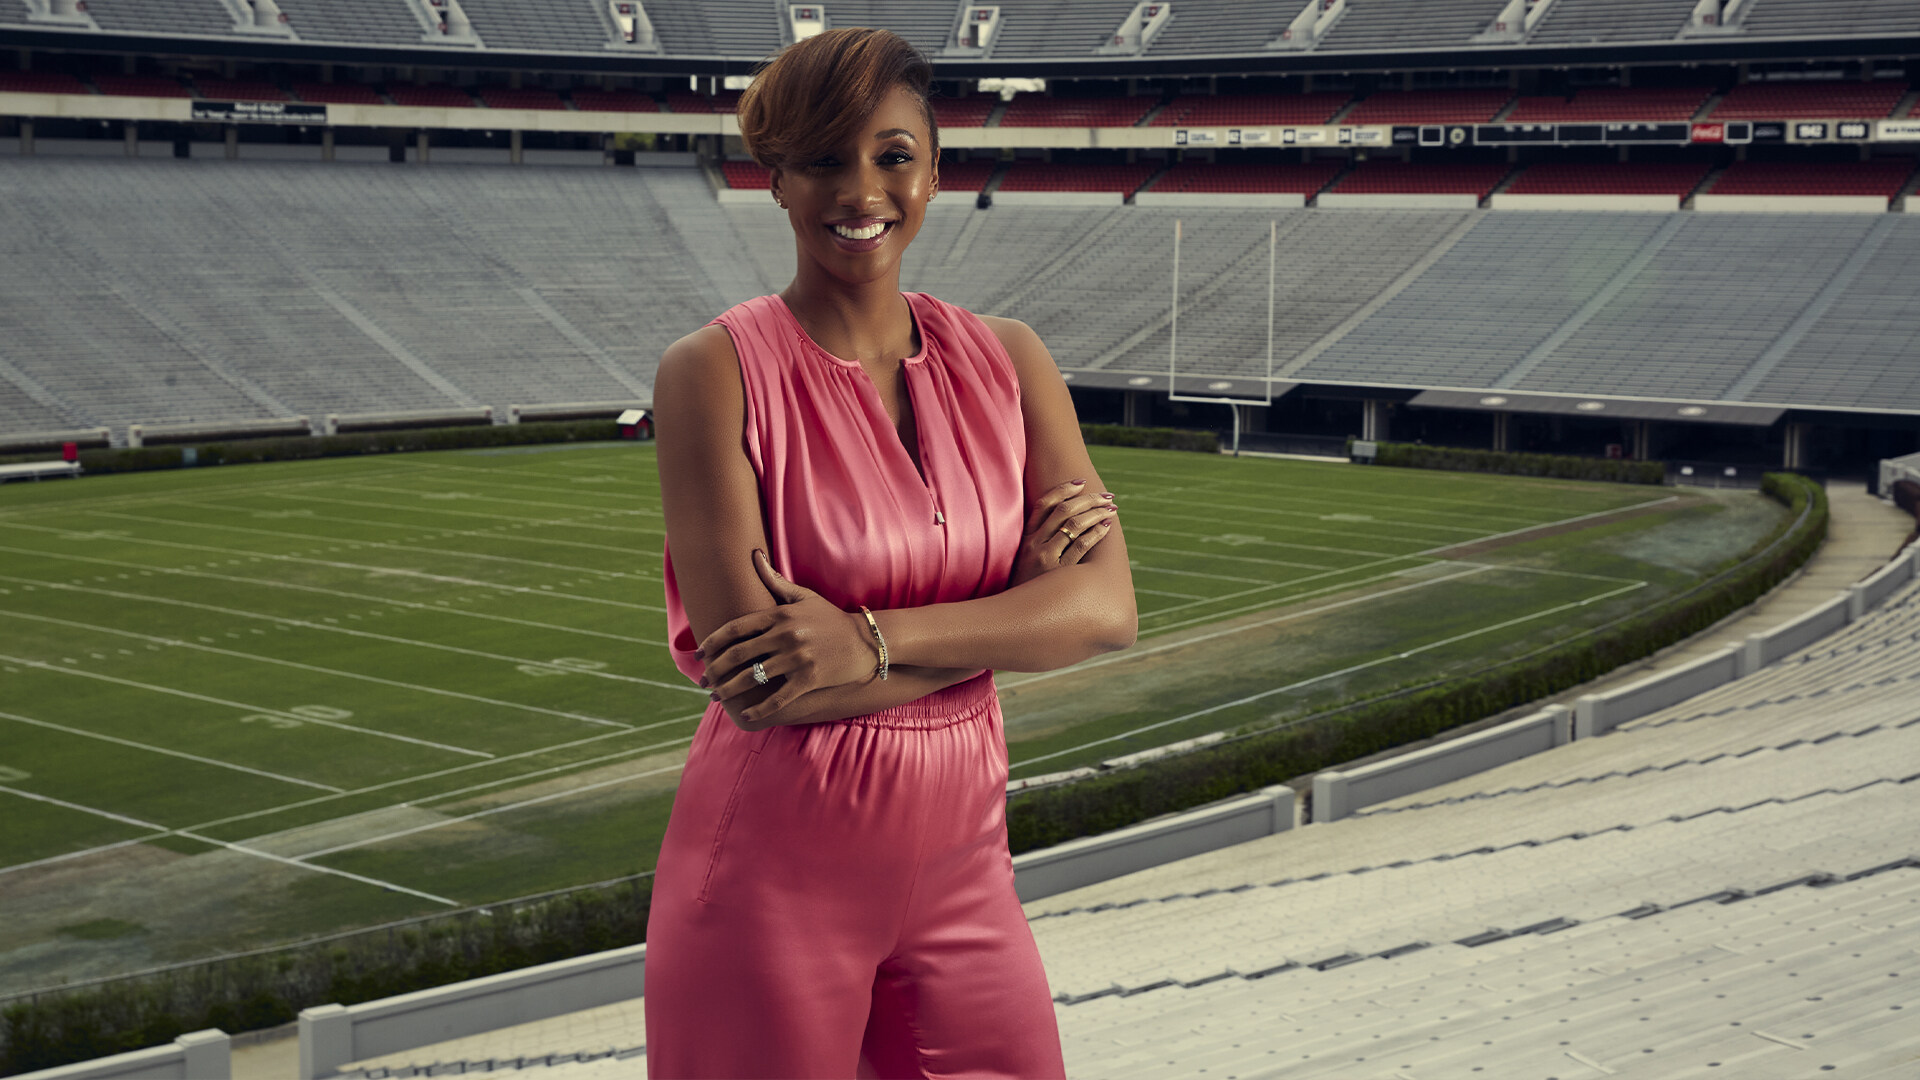 MARIA TAYLOR美國體育電視主持人、製作人，致力推動種族平權。2021年，《廣告周刊》(Adweek)將